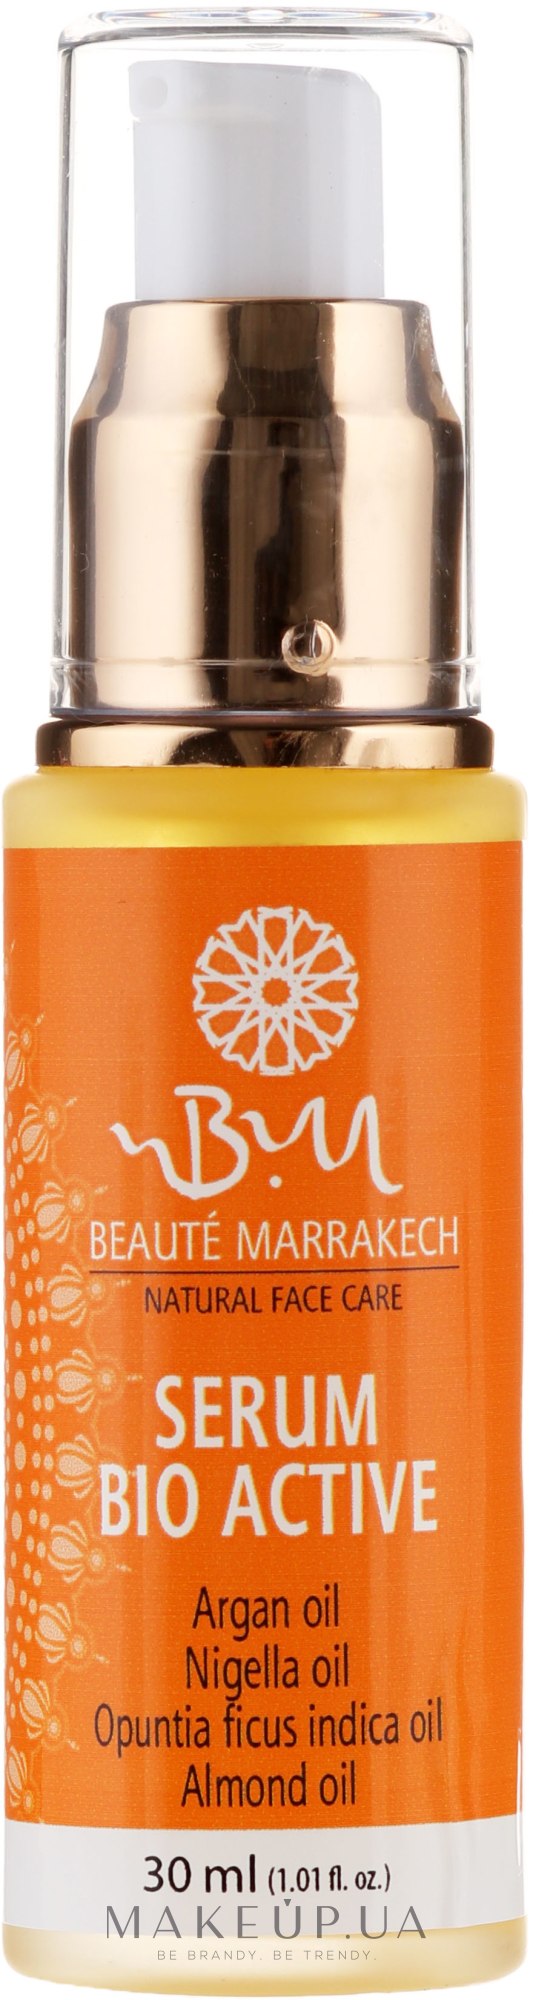 Регенерирующая сыворотка для лица - Beaute Marrakech Bio Active Serum — фото 30ml